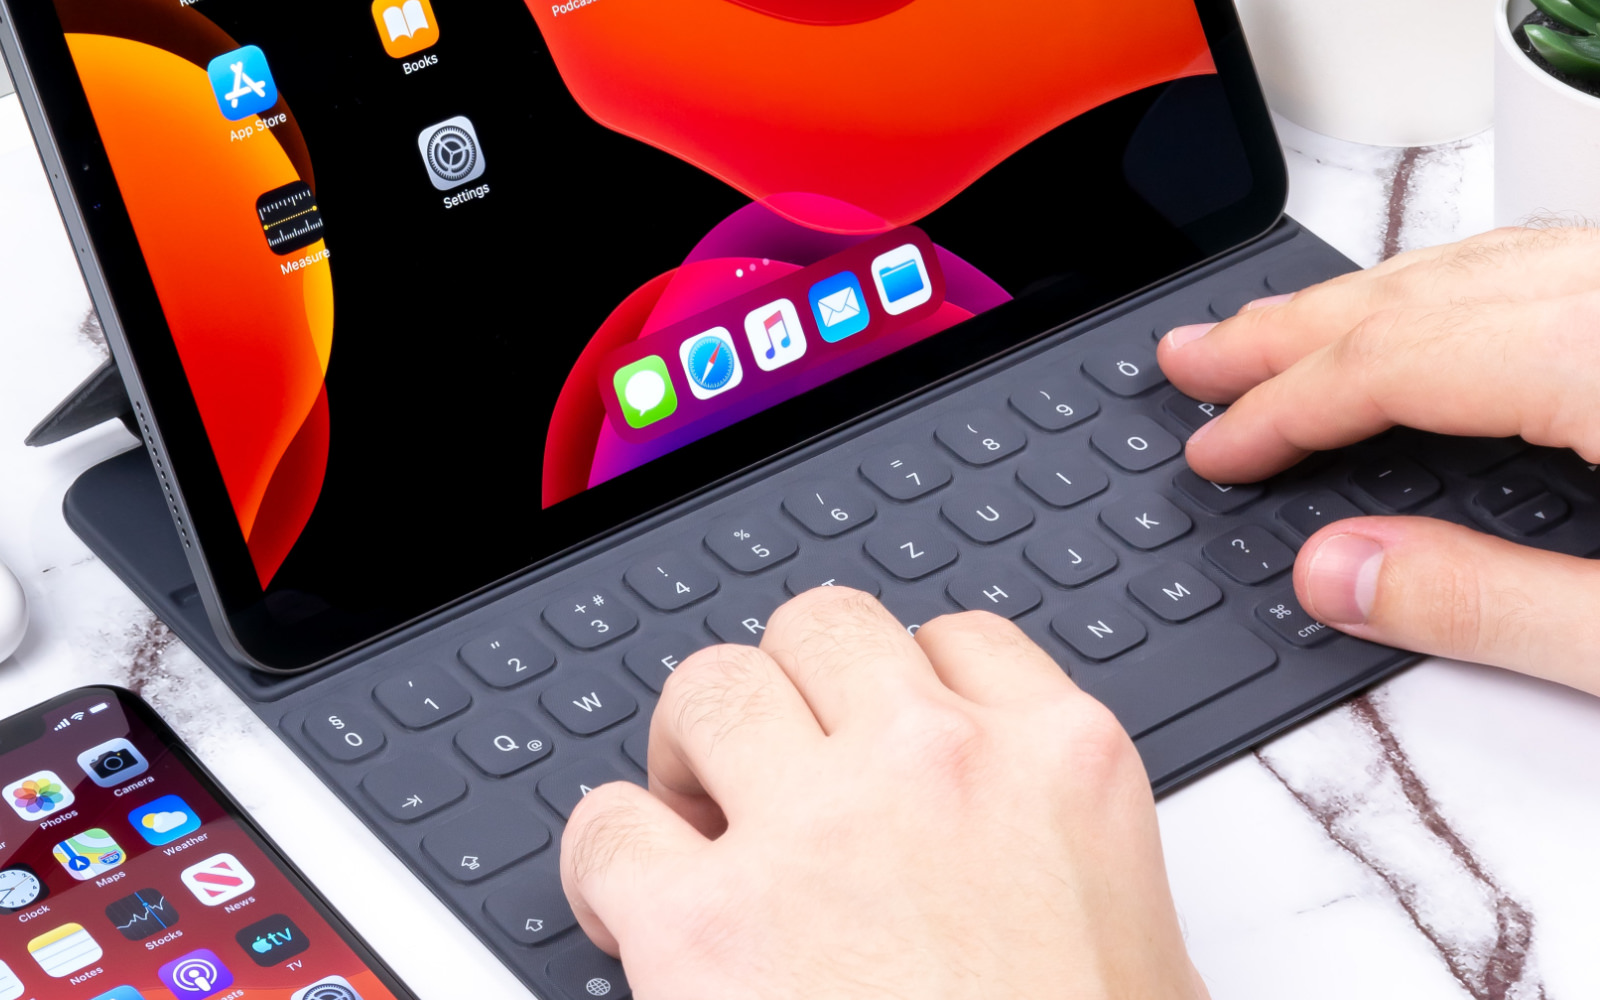 トラックパッドを内蔵したiPad用Smart Keyboard、近日中に発表か